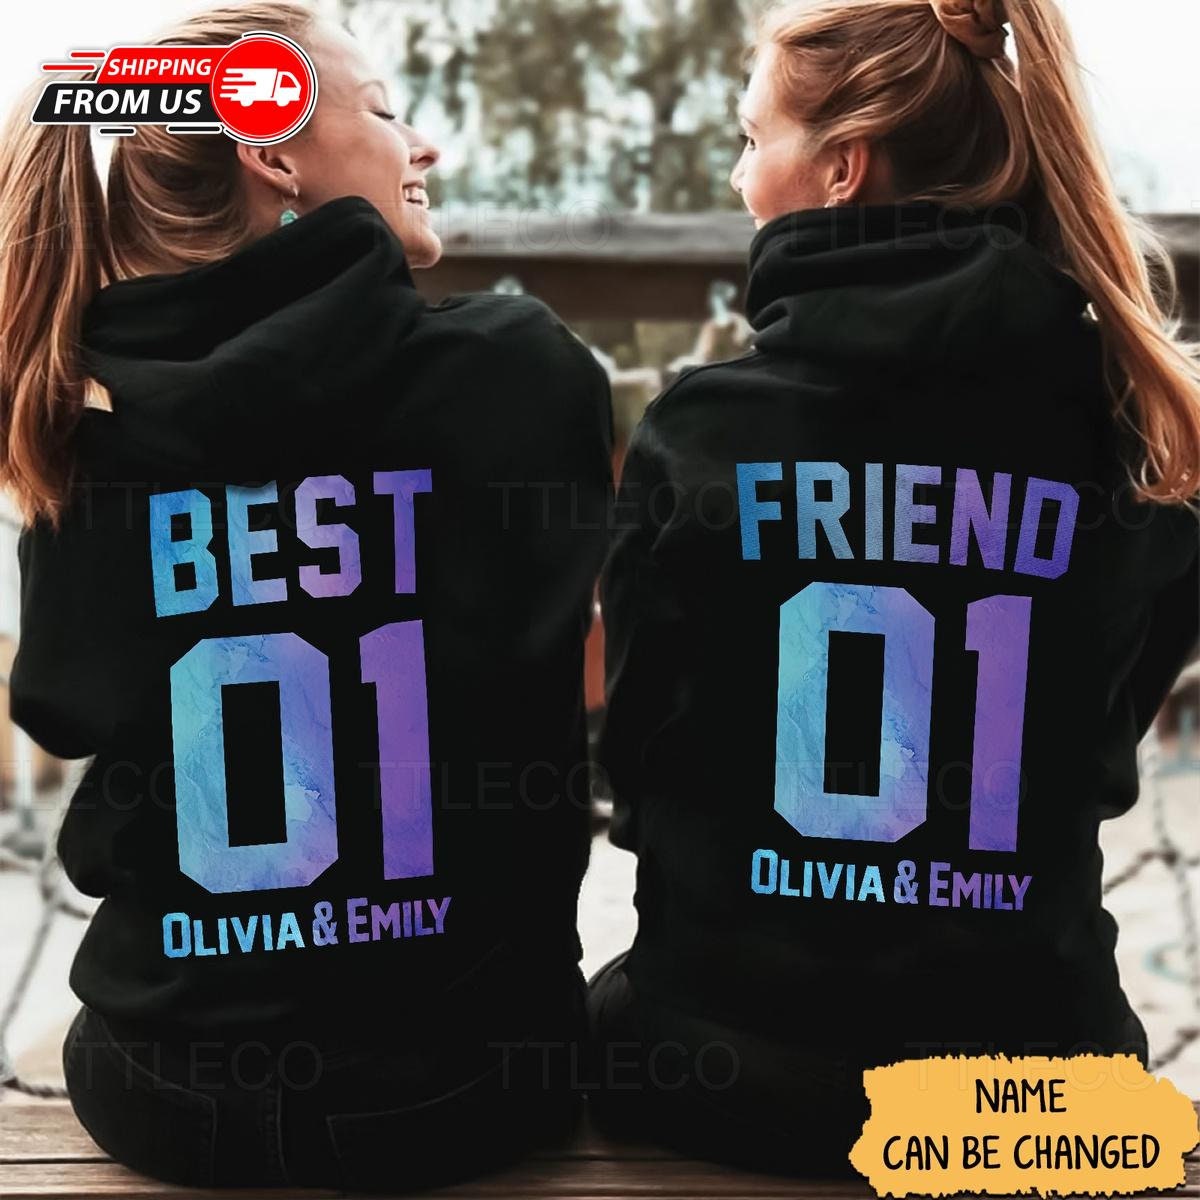 Best friend pullover - Etsy España